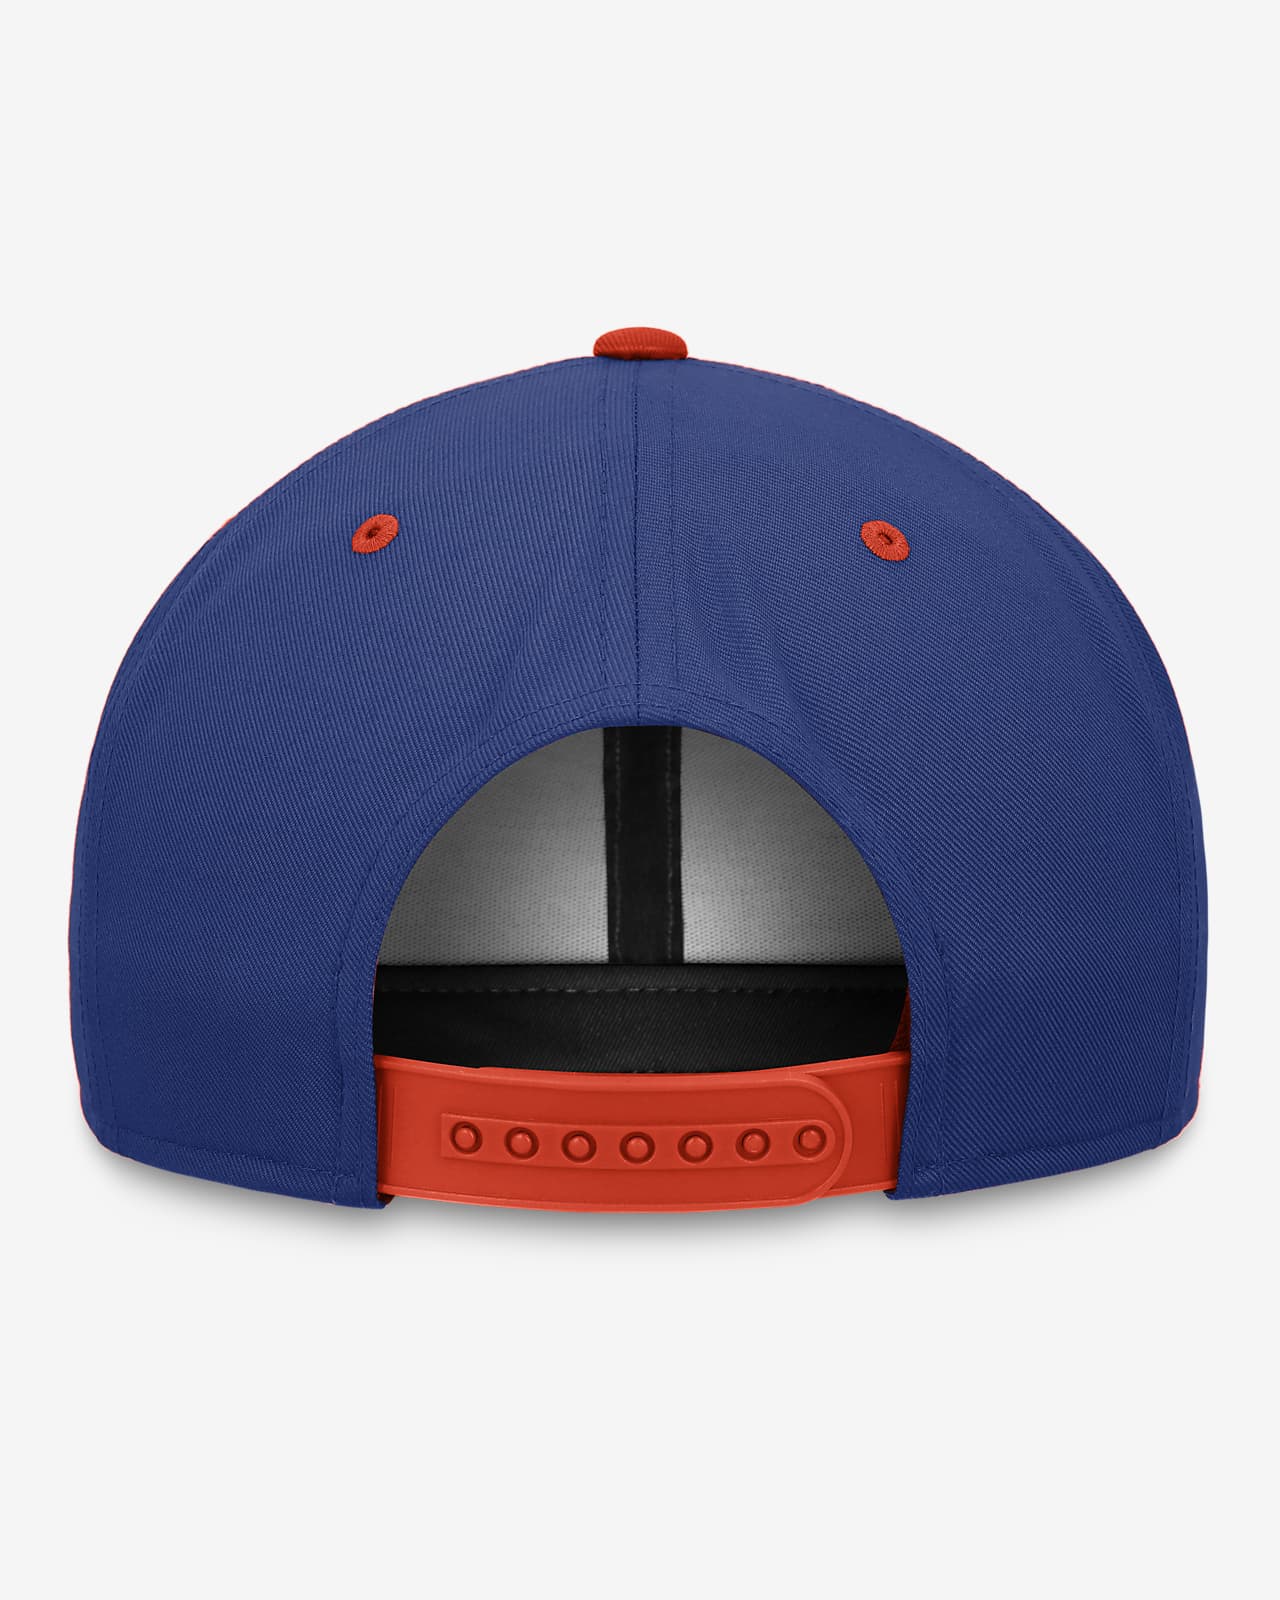 New York Mets Pro Cooperstown Men's Nike MLB Adjustable Hat